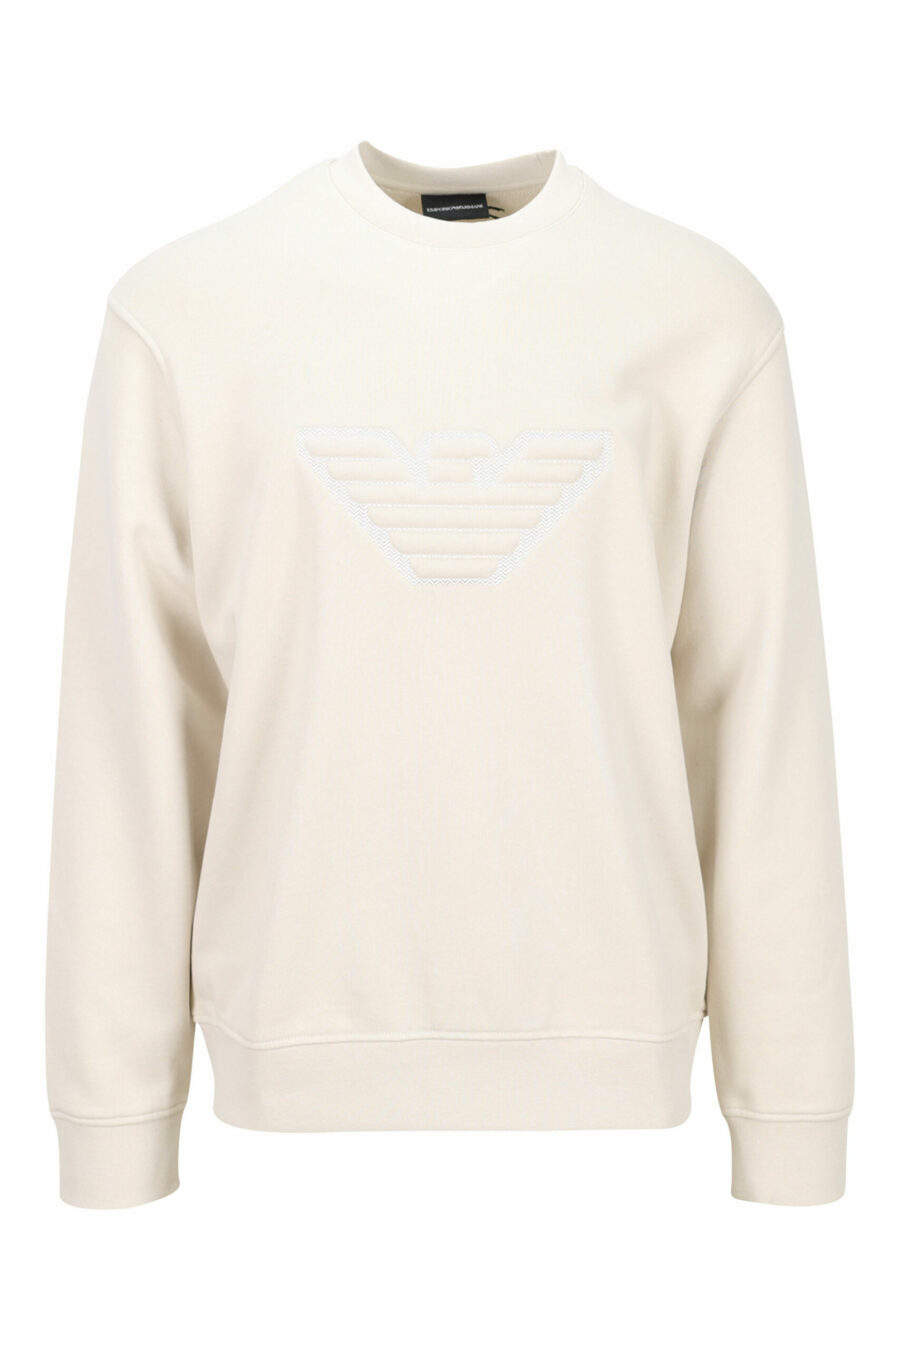 Beige sweatshirt with eagle maxilogue - 8057767552107 scaled